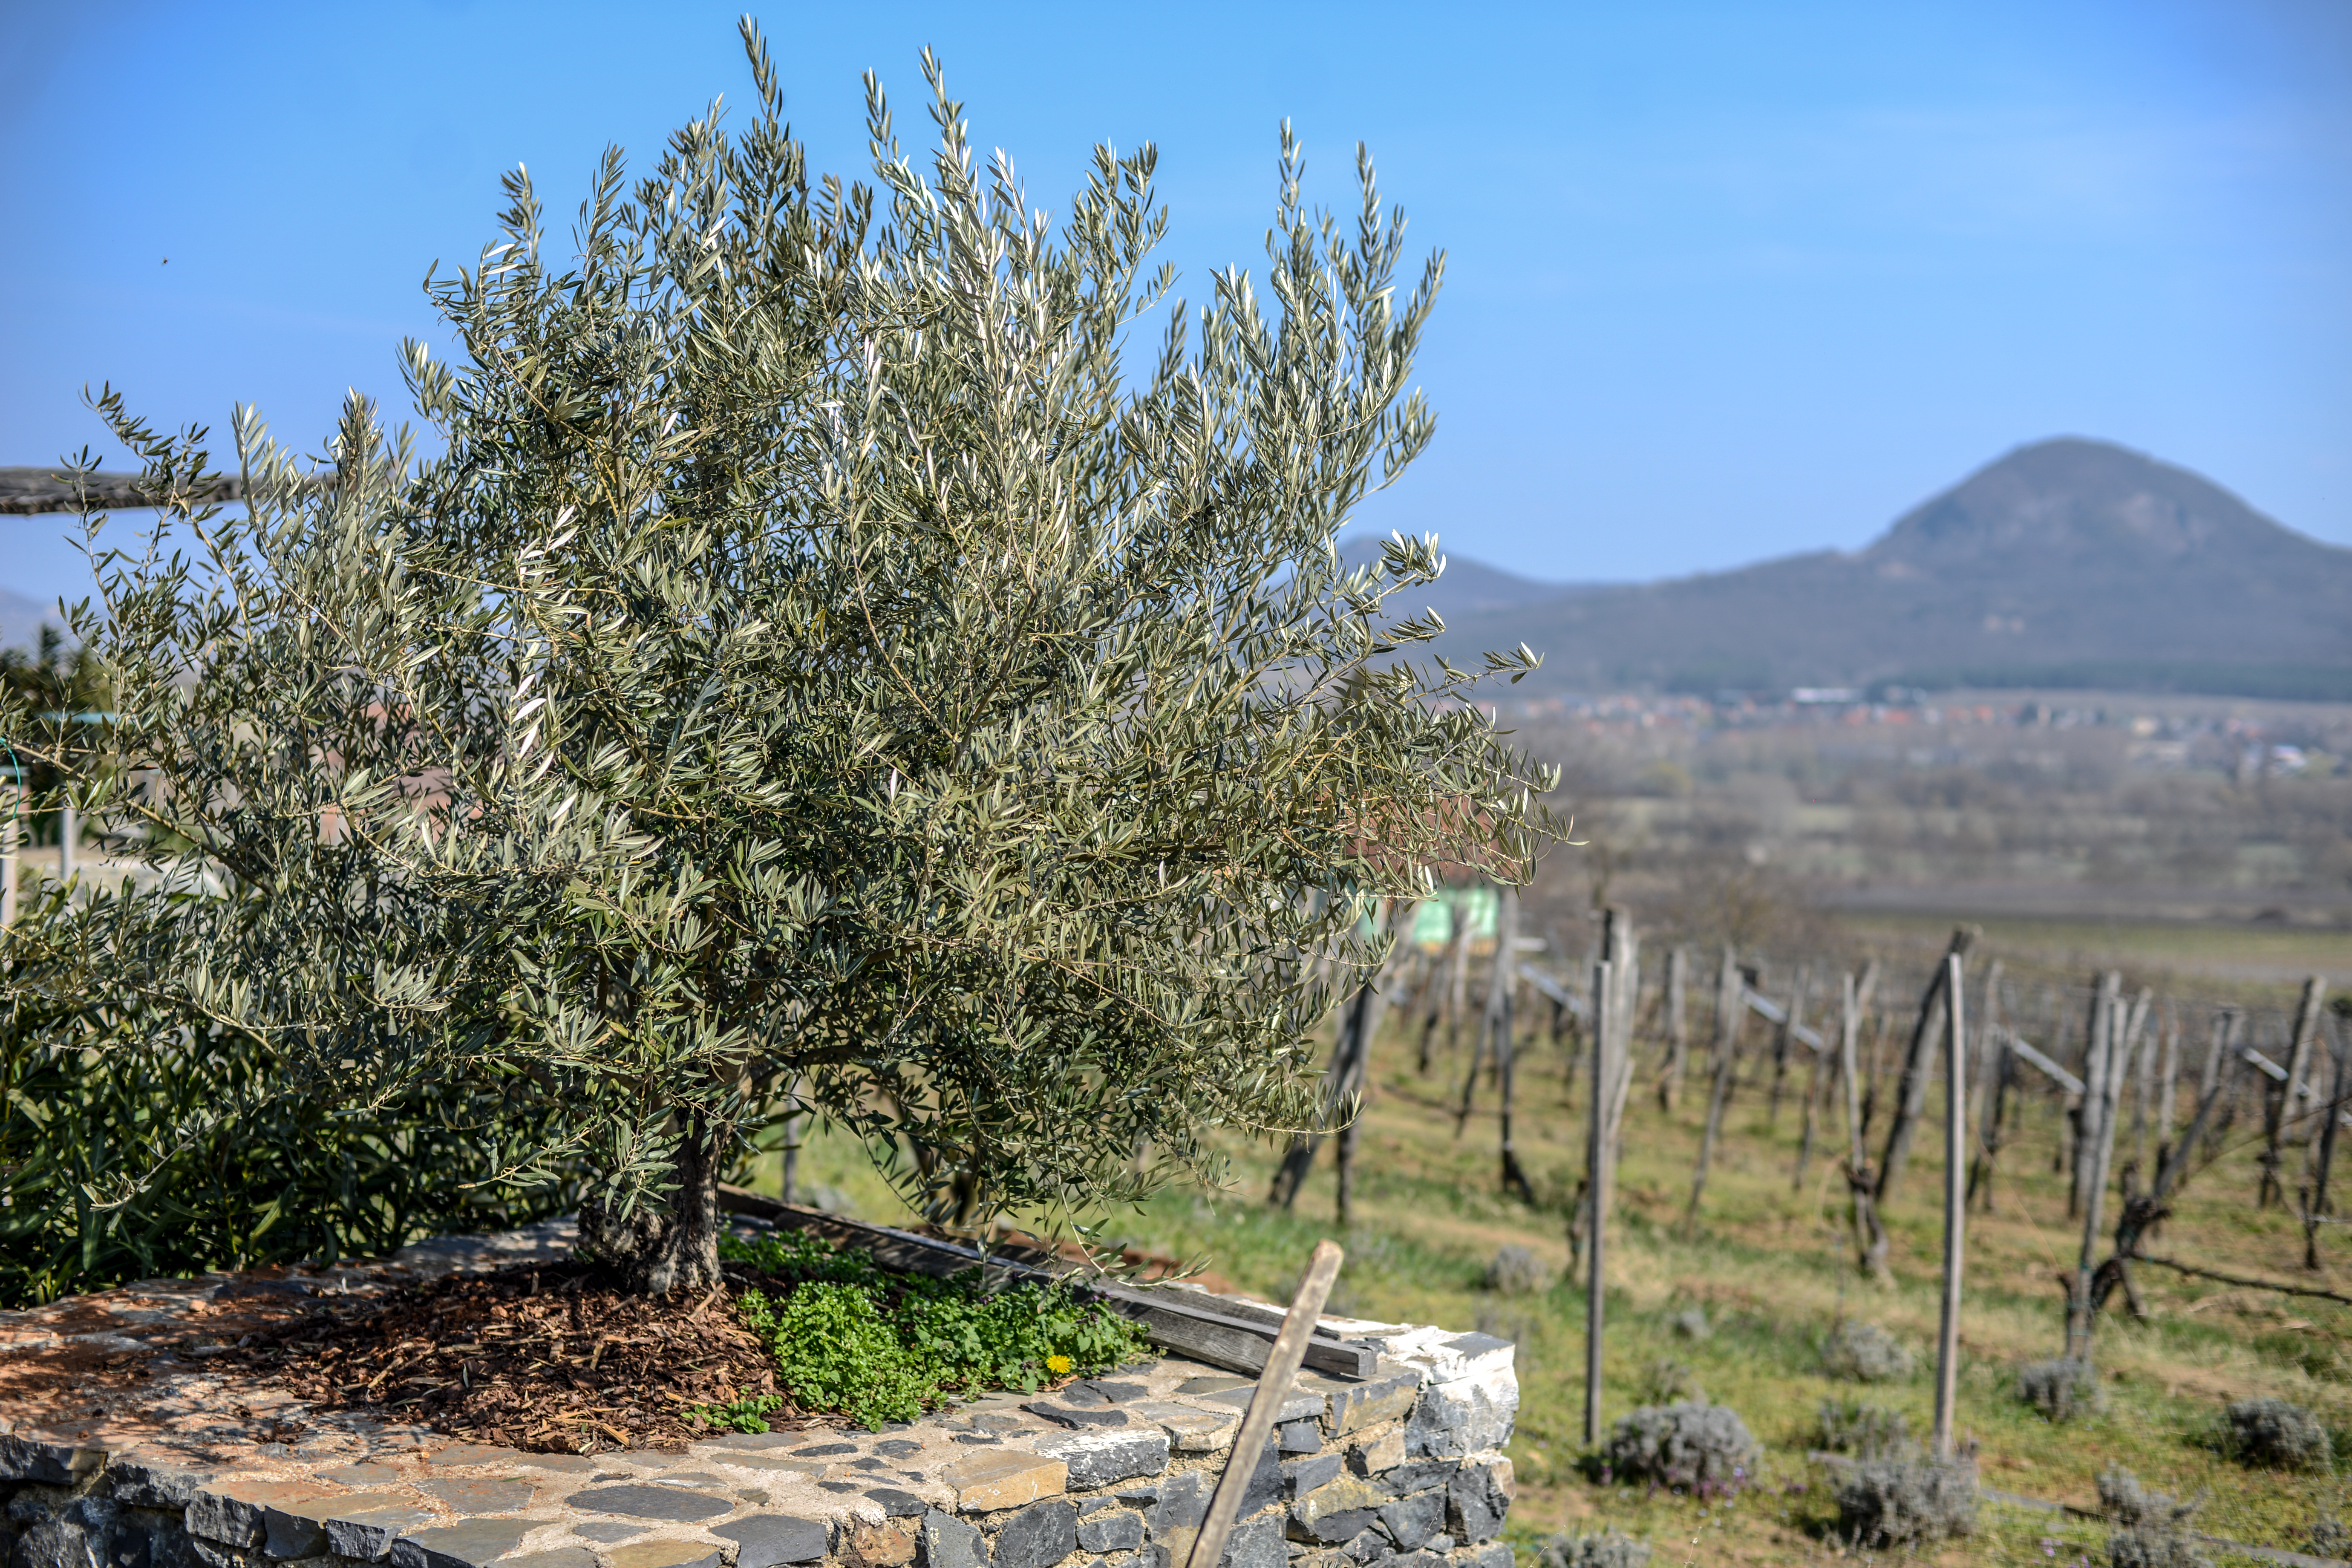 Lesz-e olívatermesztés a Balatonnál? – Ökológiai kutatások és rendhagyó kiállítás a MOME és a Balatorium együttműködésében